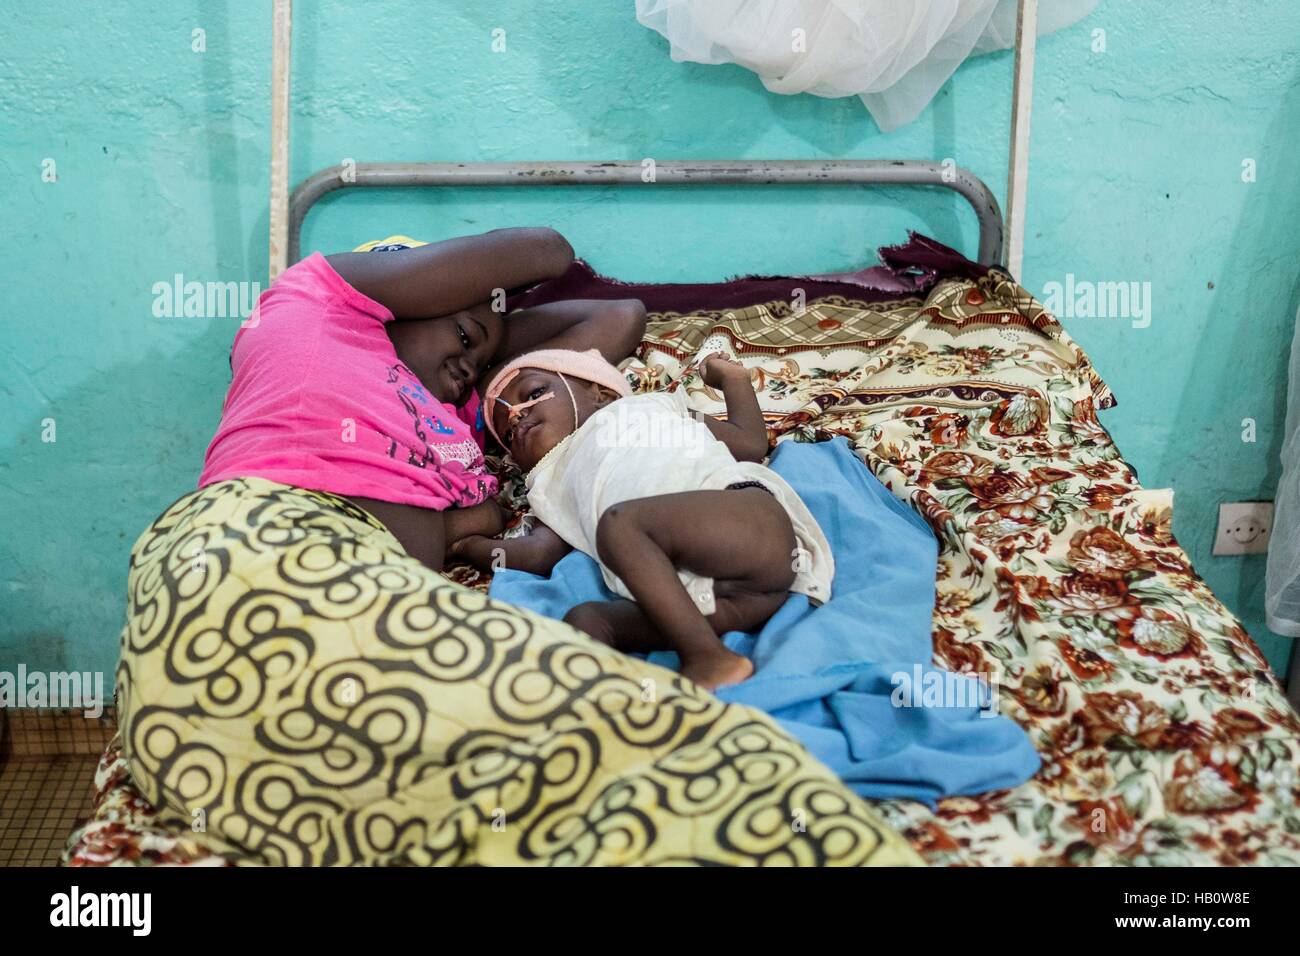 DIOILA - Mali: una donna stabilisce con il suo bambino soffre di malnutrizione ath intensivo unità nutrizionale dell'ospedale Dioila il 7 novembre 2016 in Dio Foto Stock